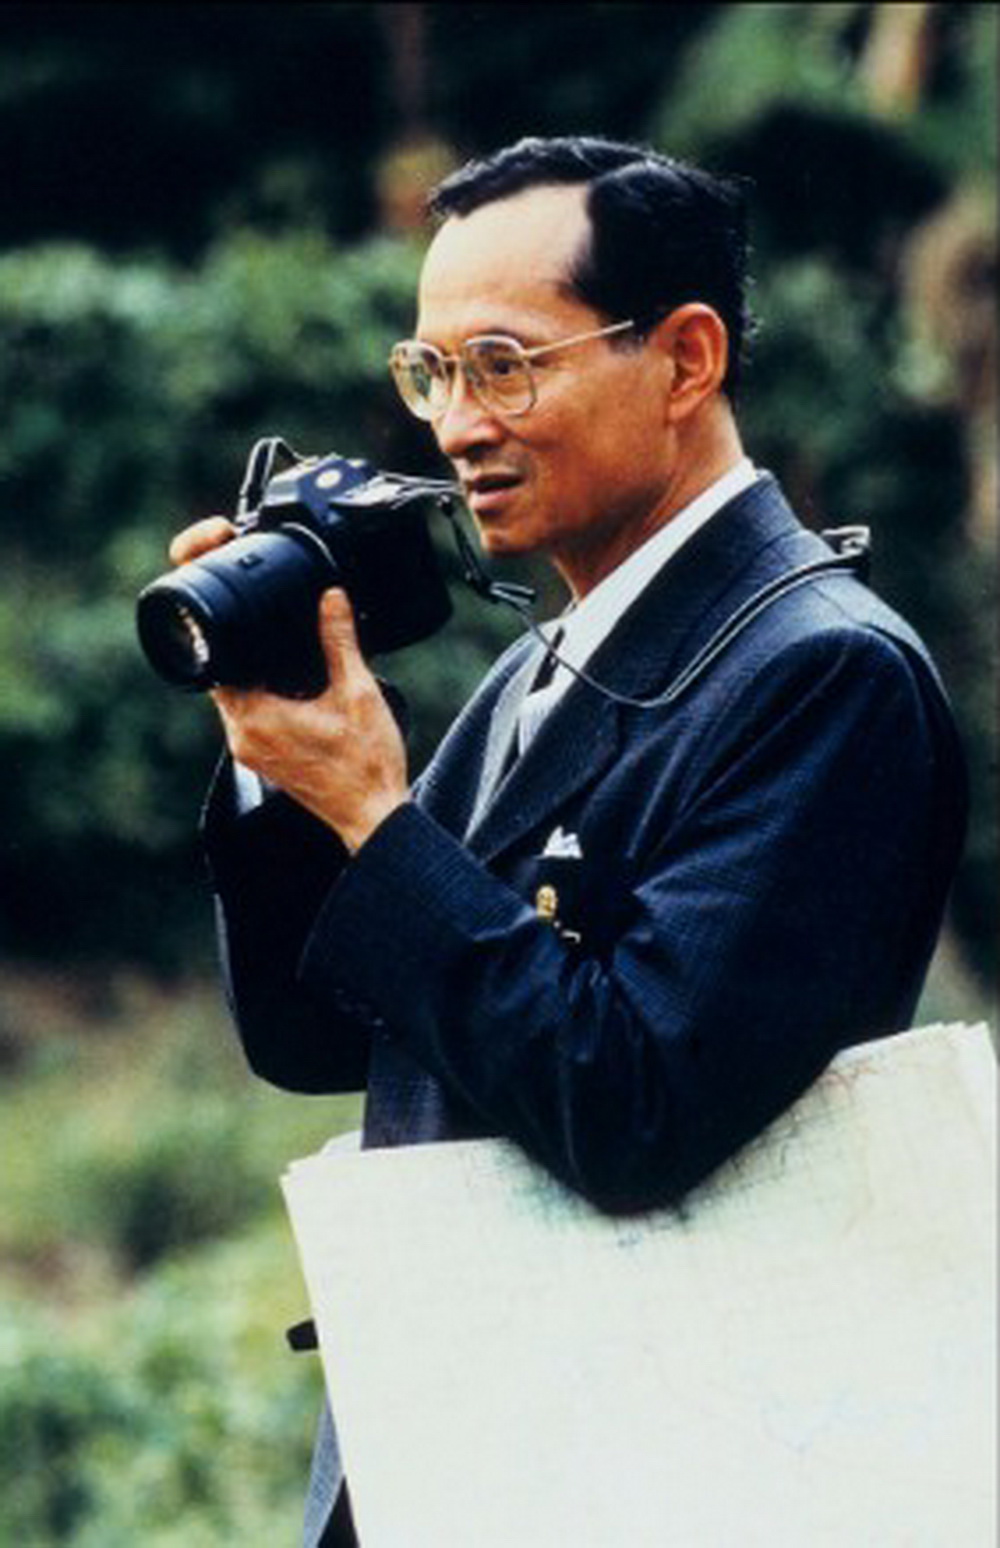 Quốc vương cầm máy chụp ảnh năm 1995 - Ảnh: GETTY